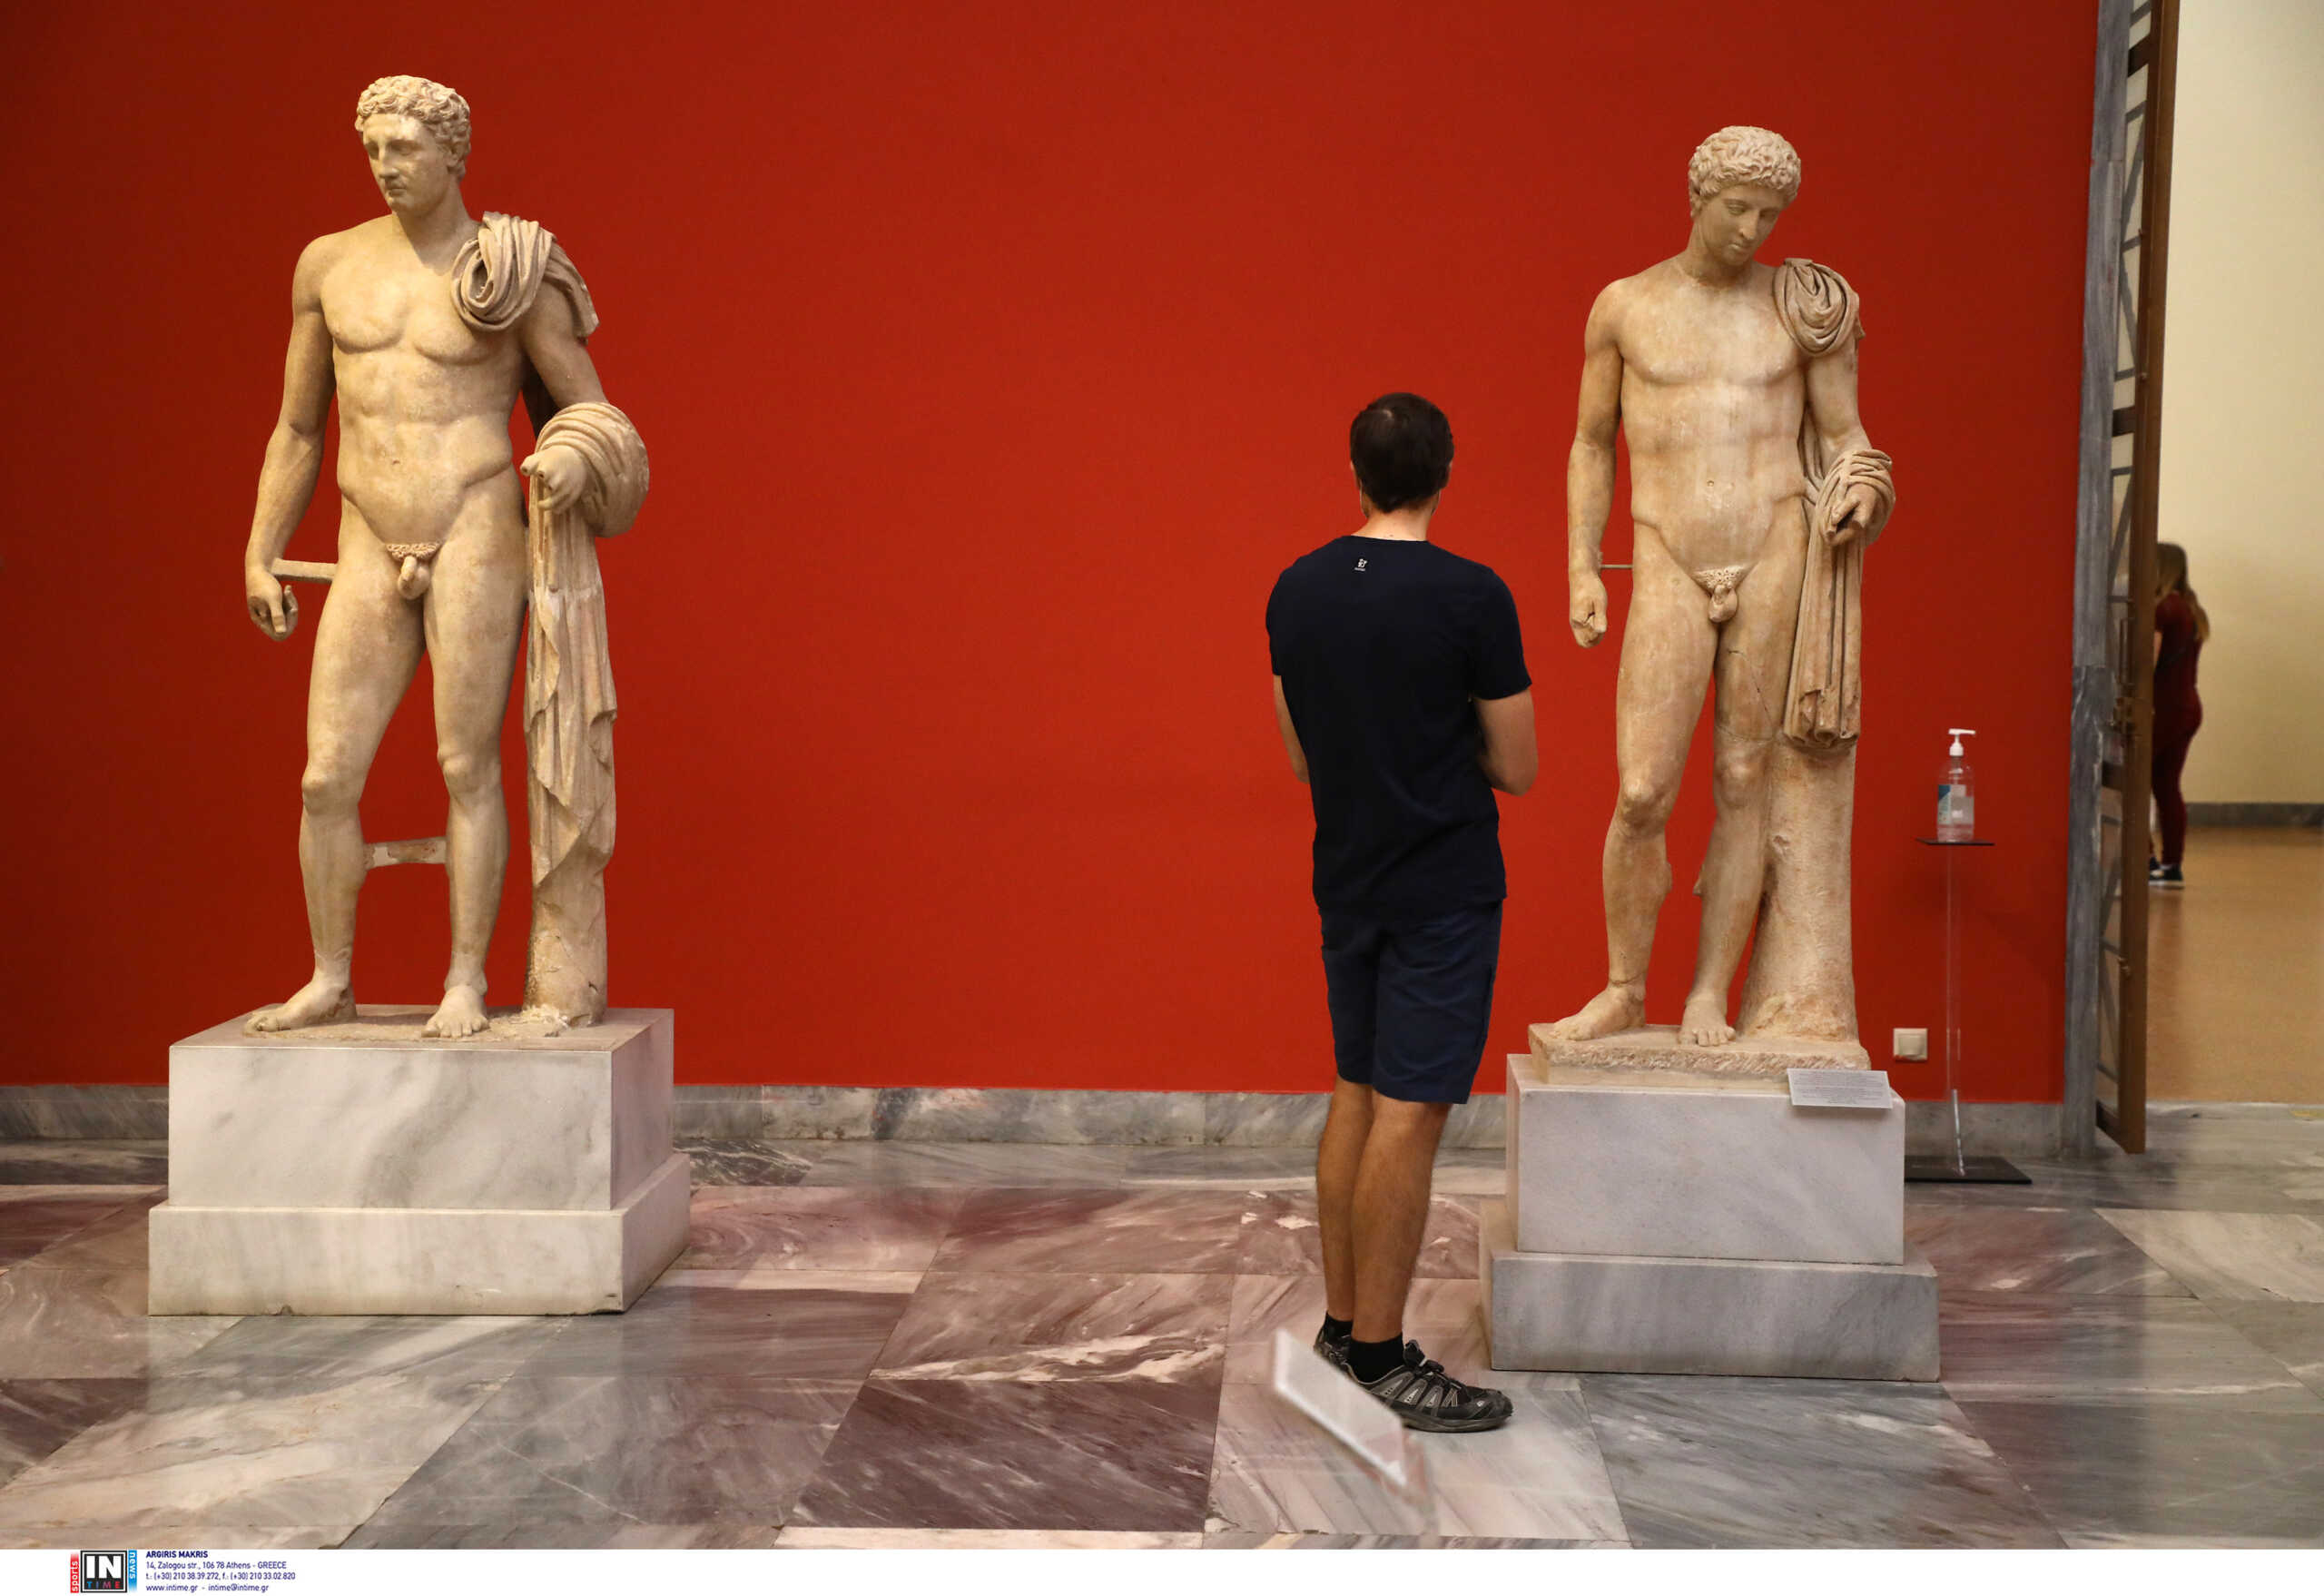 Πολυτεχνείο: Αλλάζουν τα ωράρια των μουσείων στο κέντρο της Αθήνας αύριο Πέμπτη 17 Νοεμβρίου